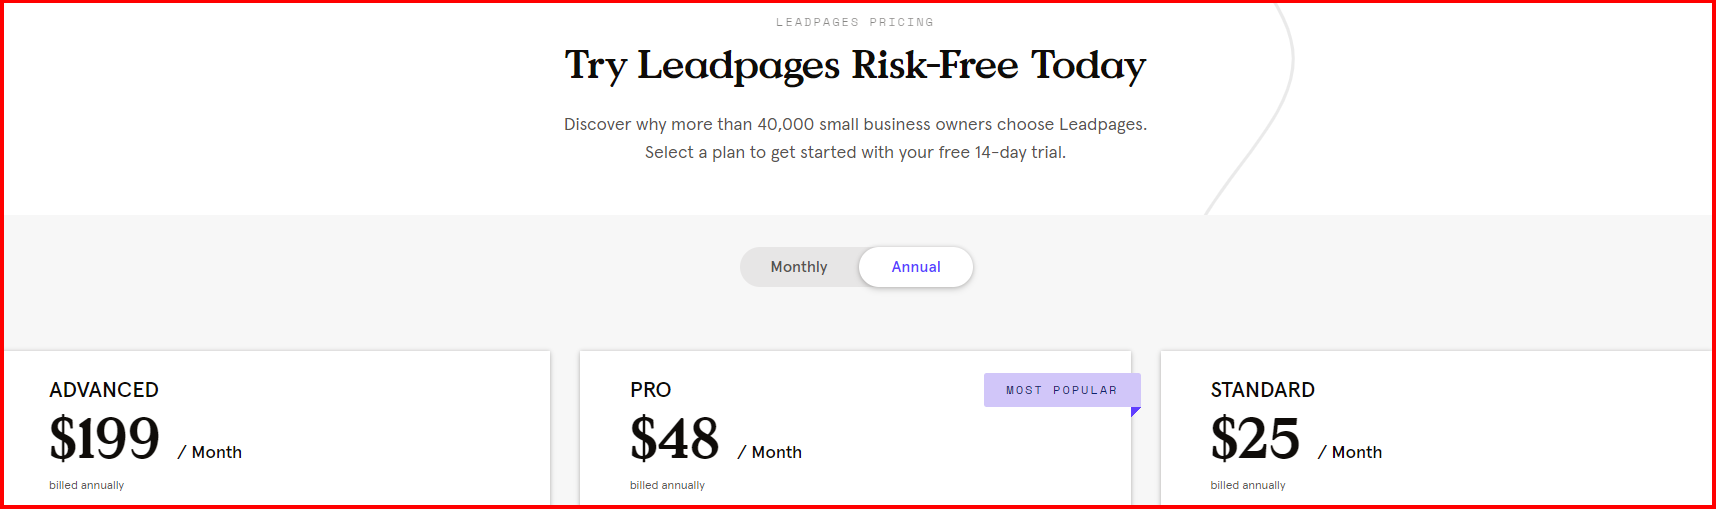 Leadpages-prijsplannen